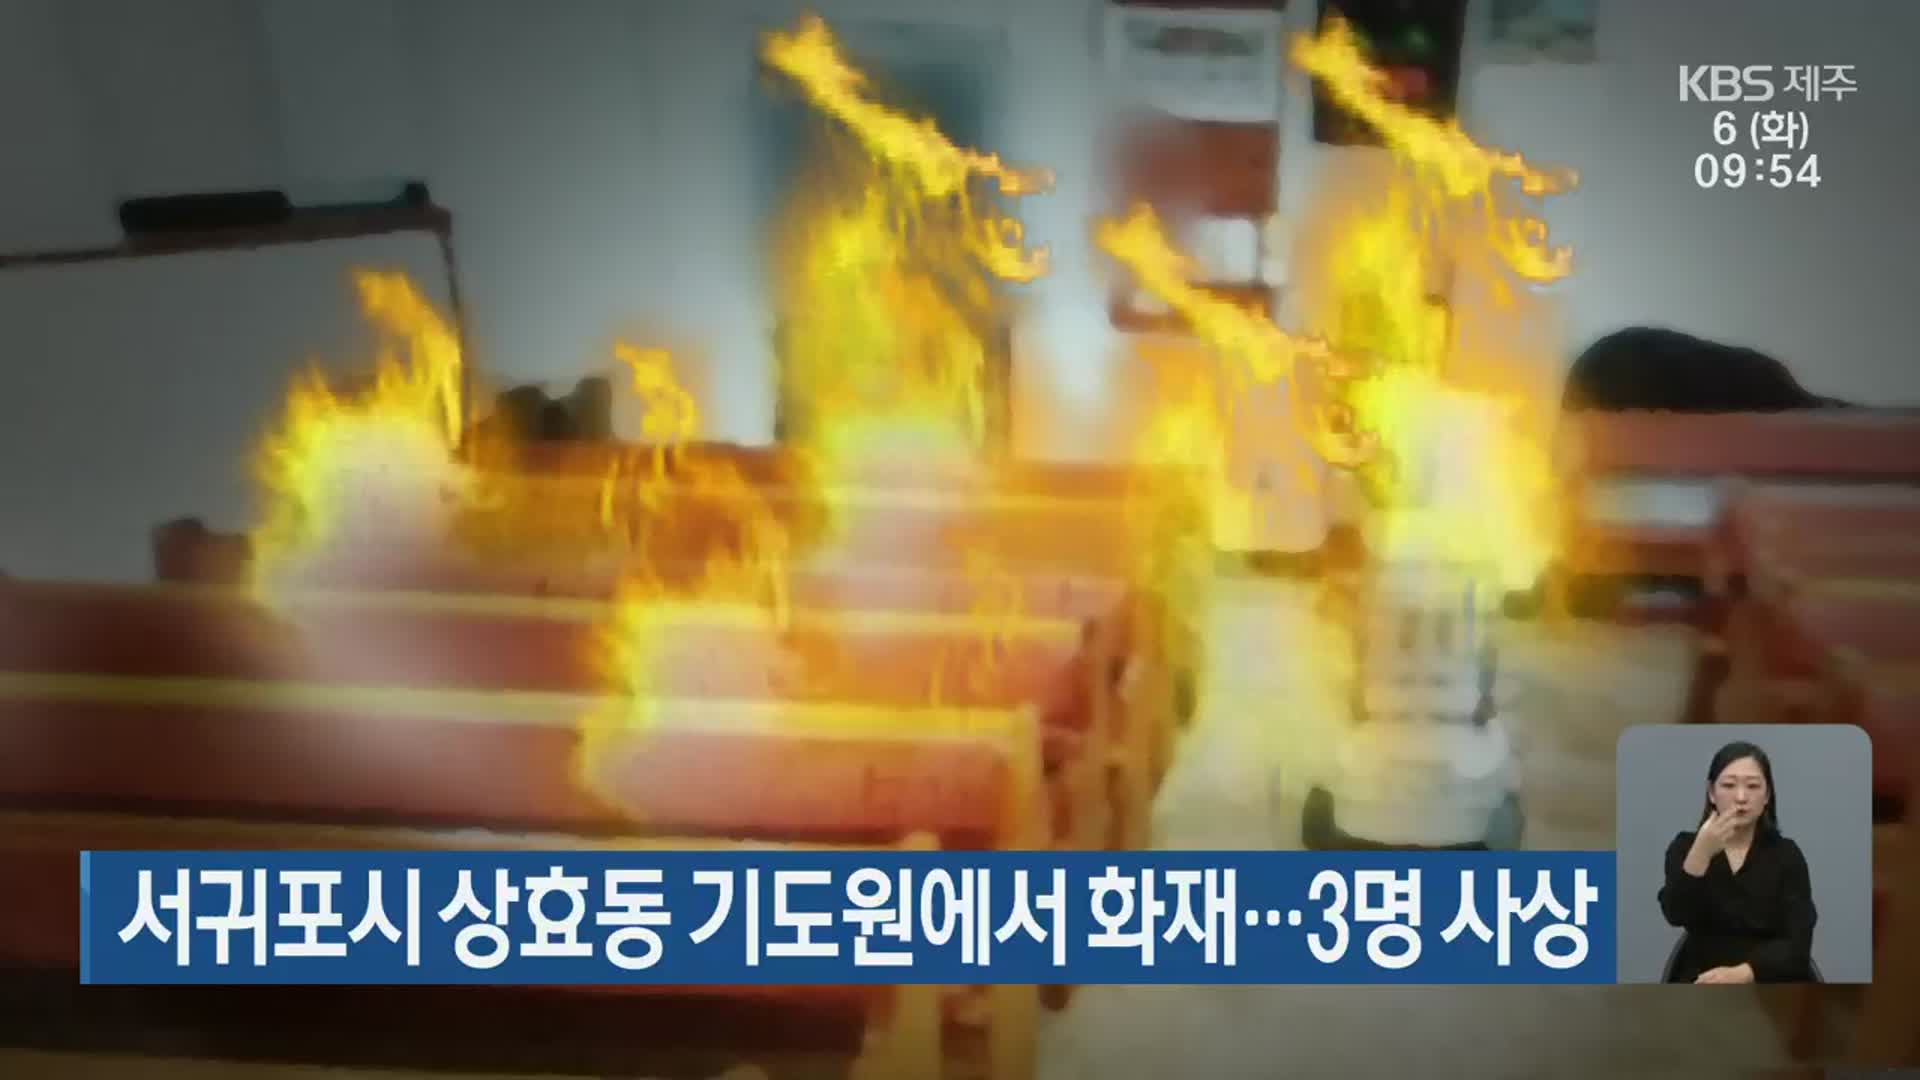 서귀포시 상효동 기도원에서 화재…3명 사상